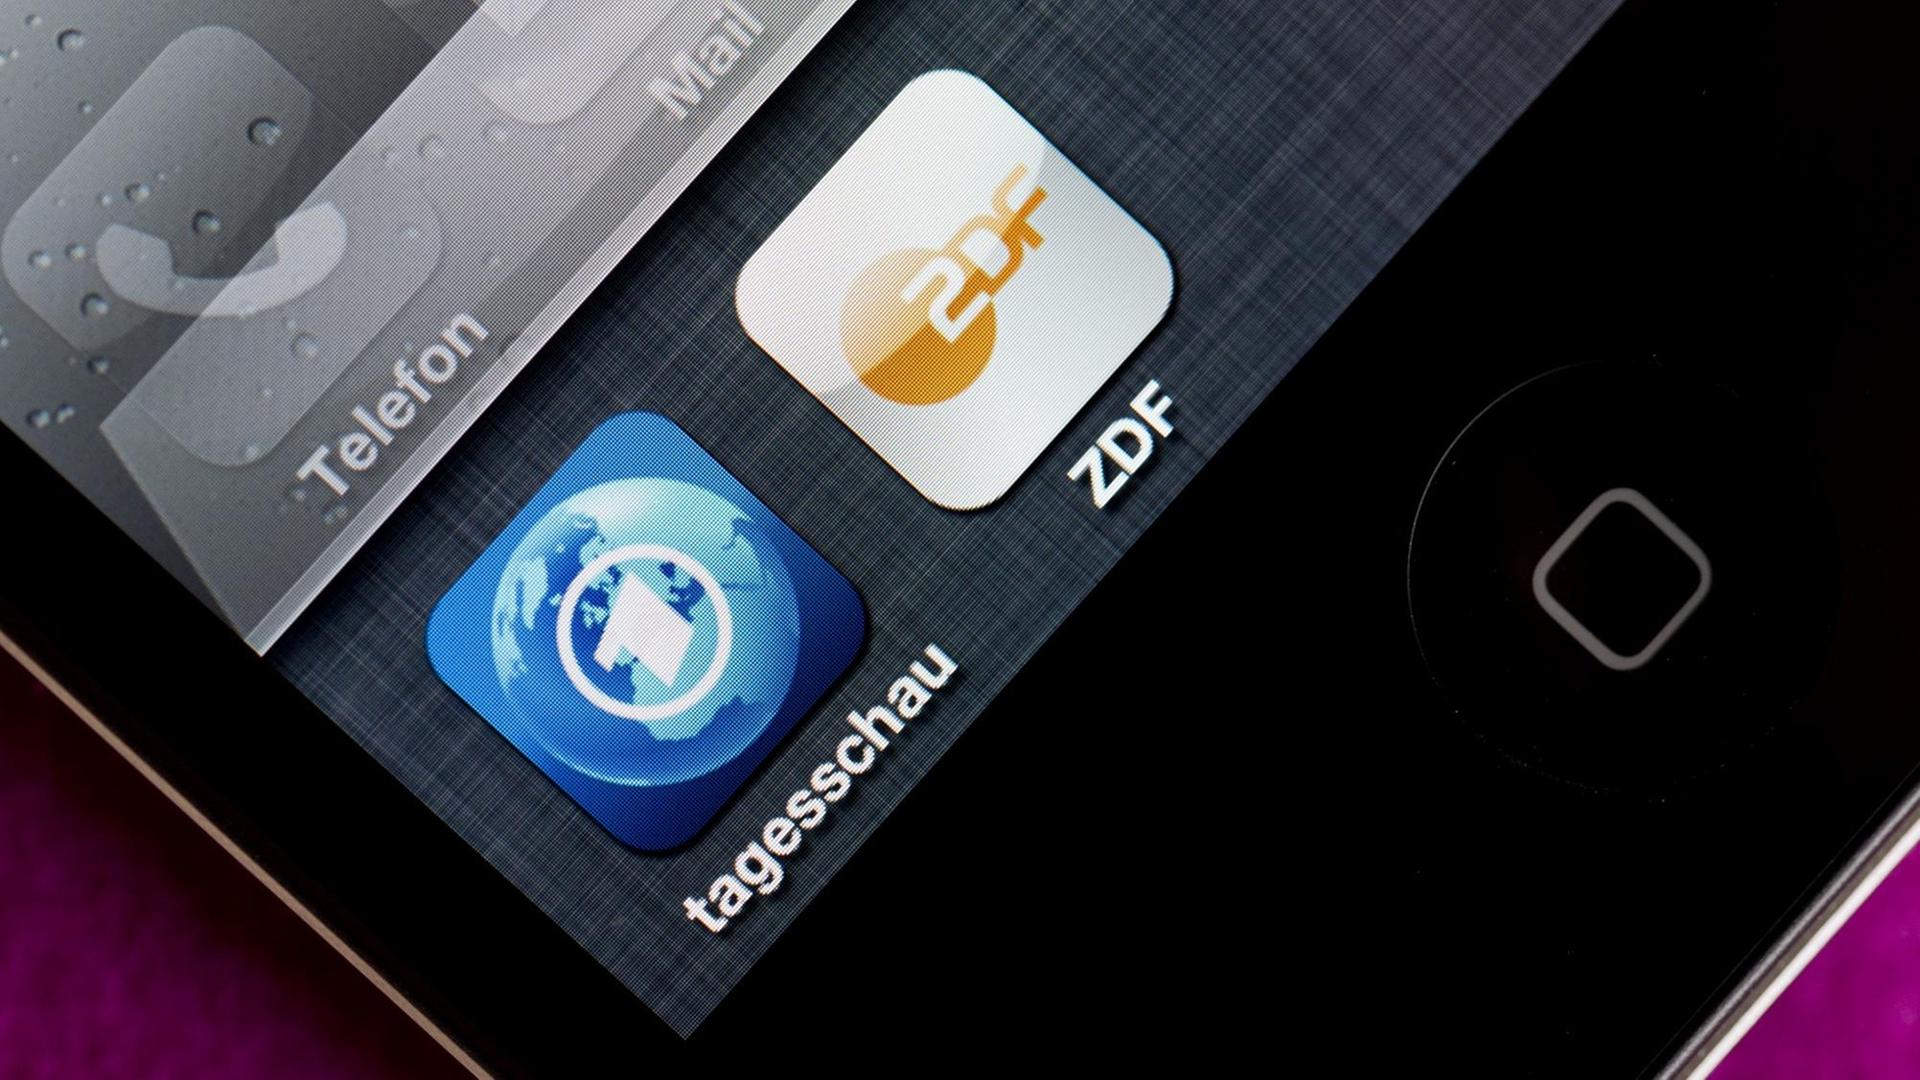 Die Apps der Tagesschau und vom ZDF auf einem Smartphone